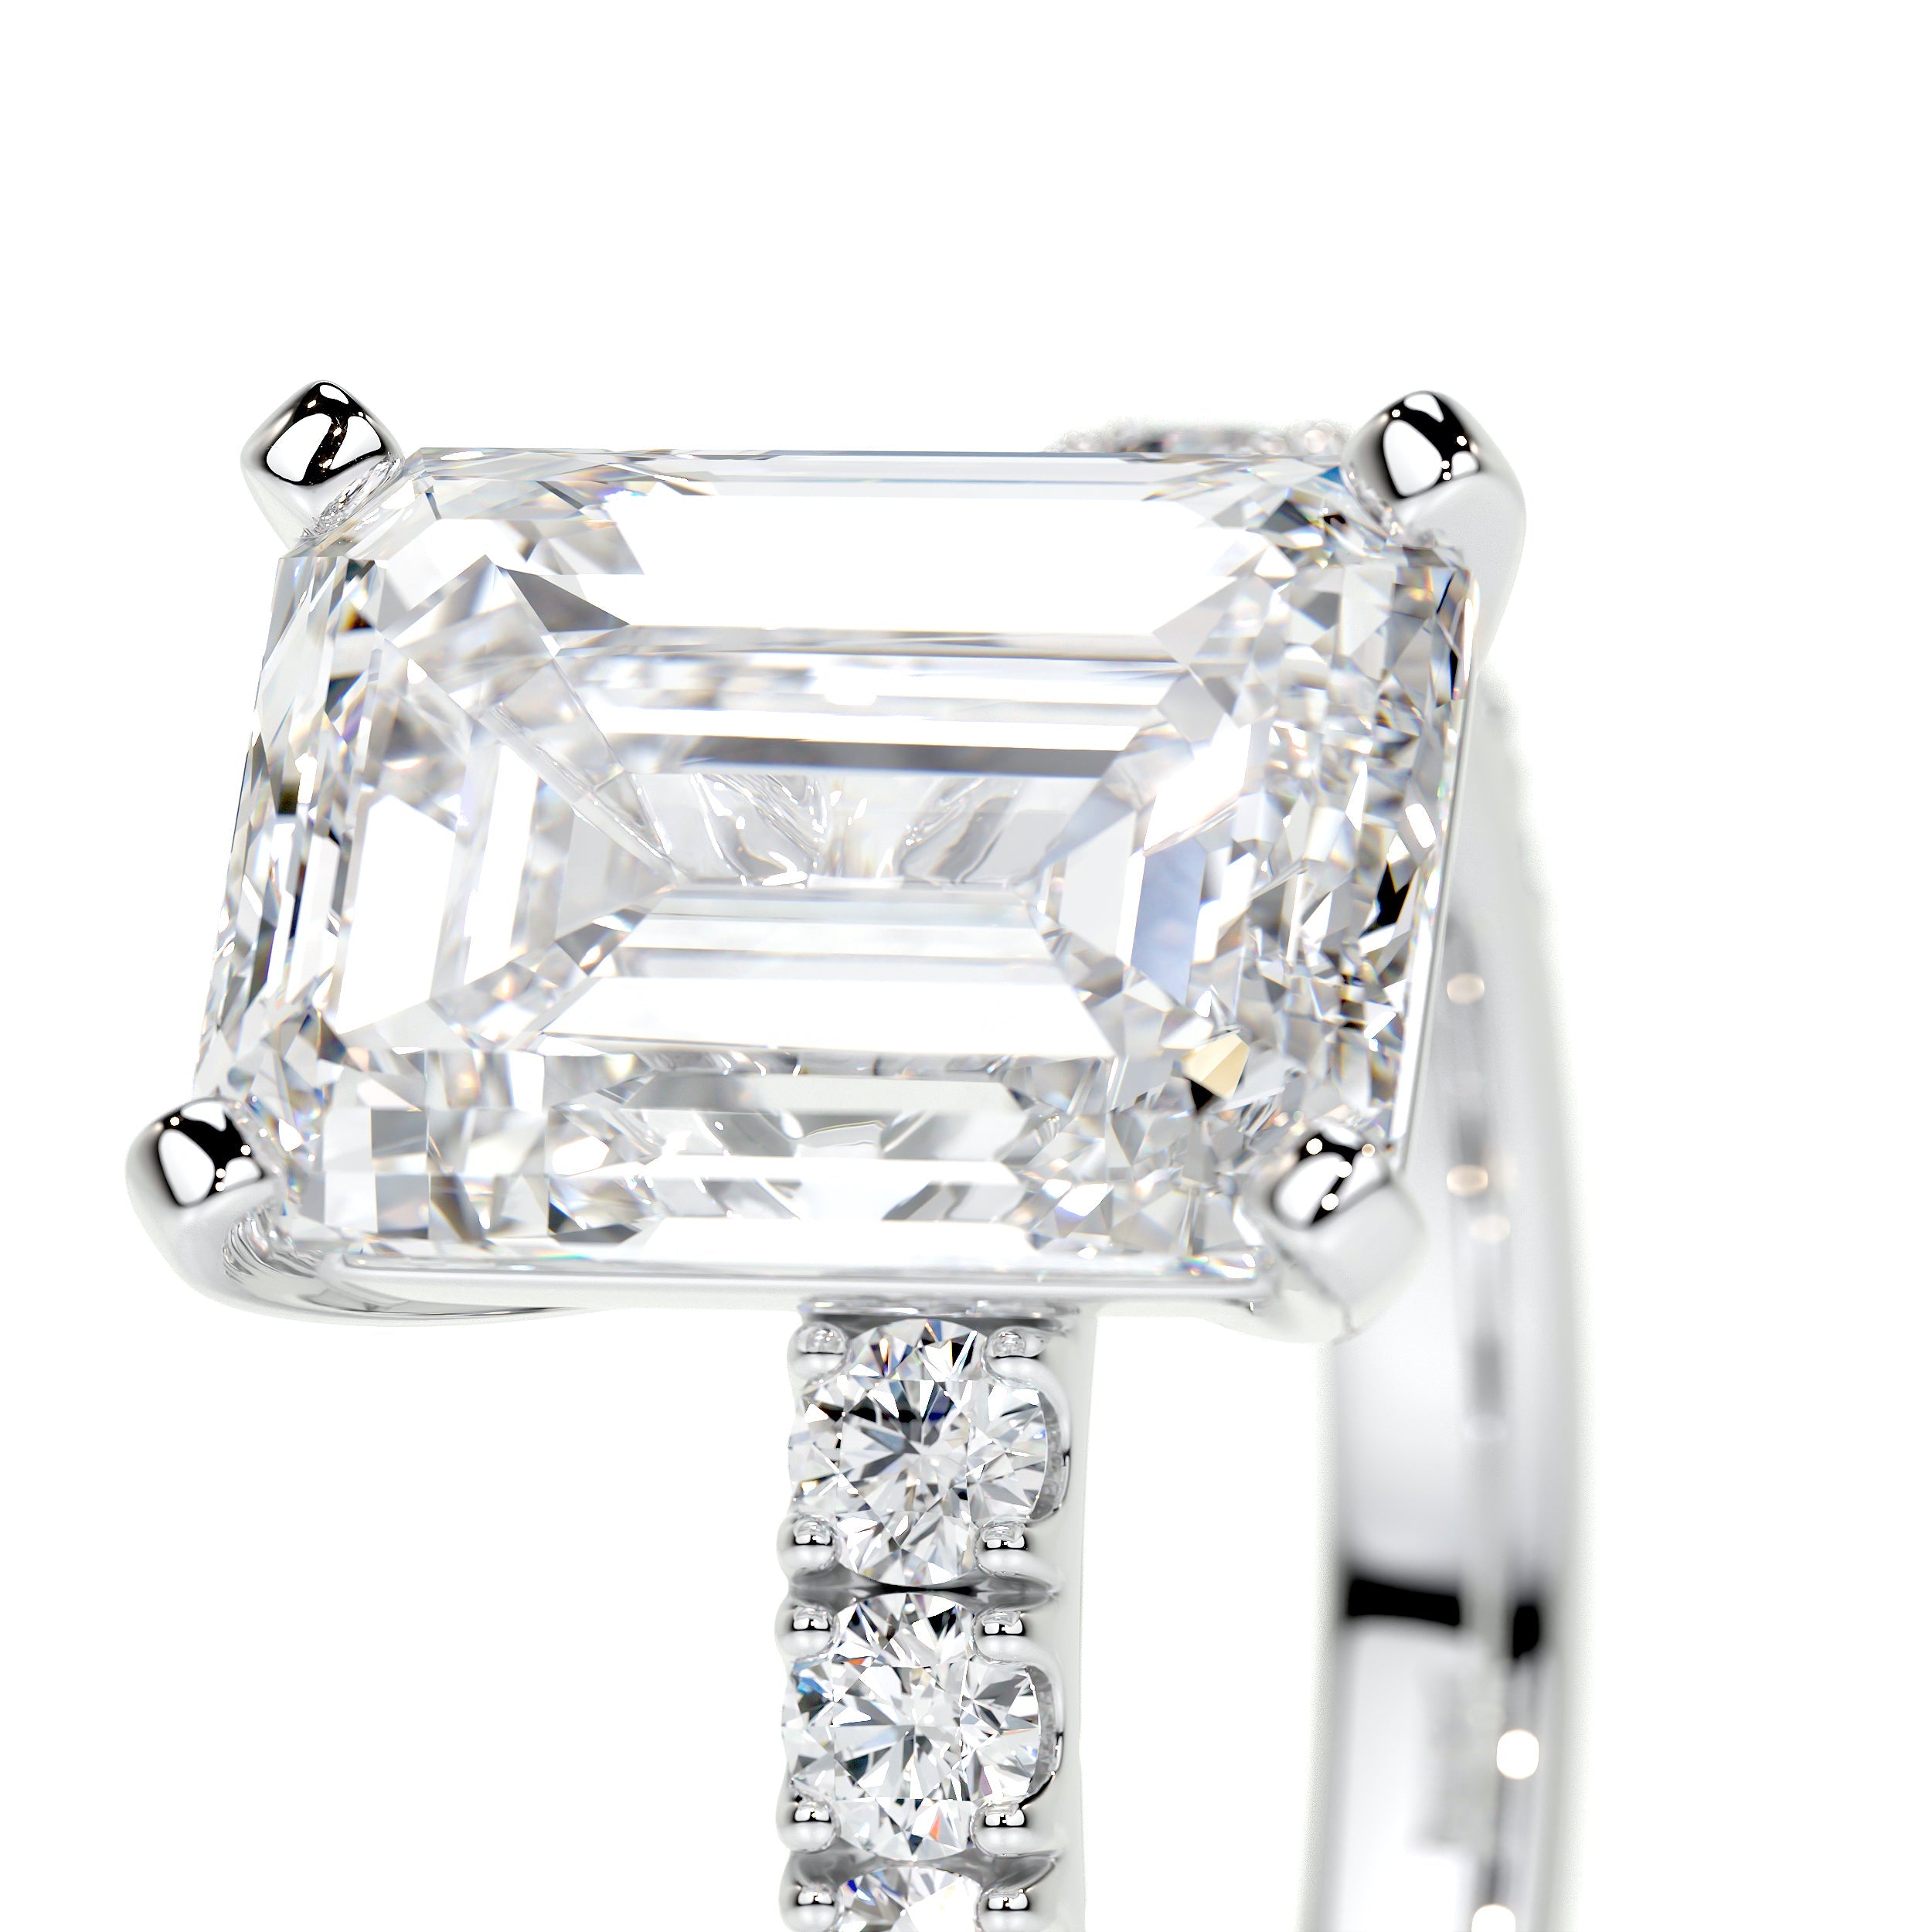 Royal Lab Grown Diamond Ring   (3.5 Carat) -Platinum